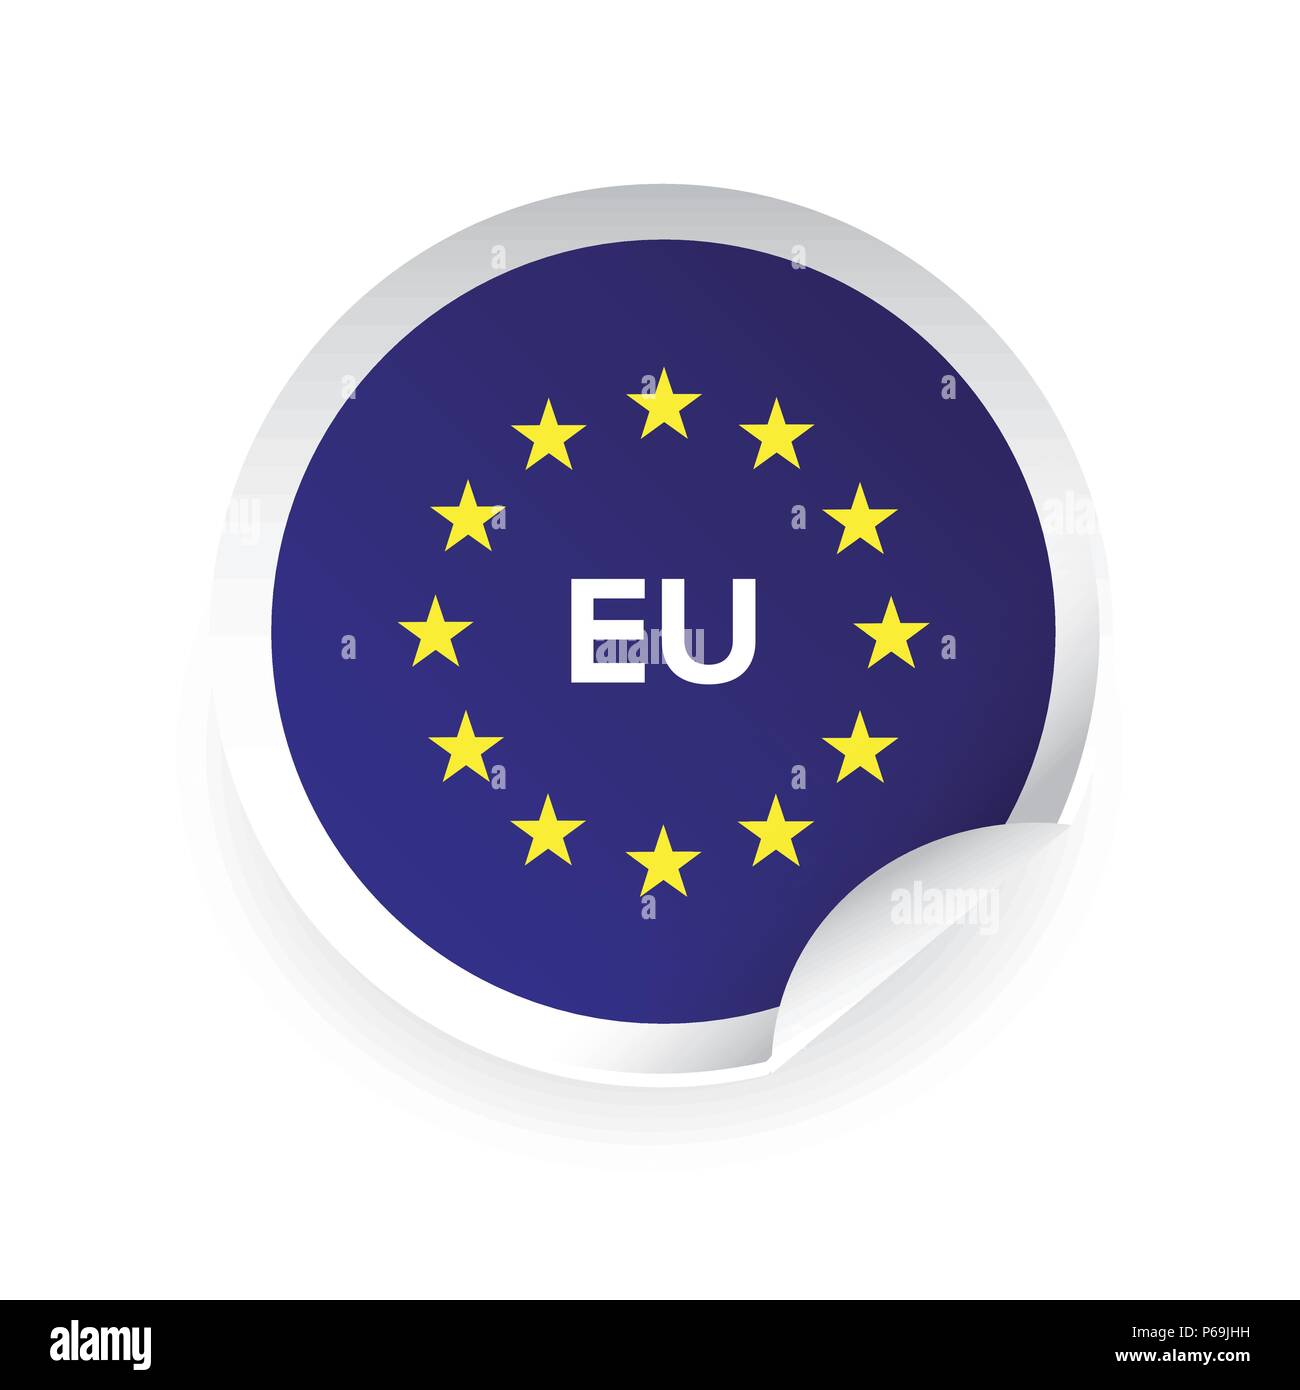 Ue - Union européenne Autocollant logo Illustration de Vecteur